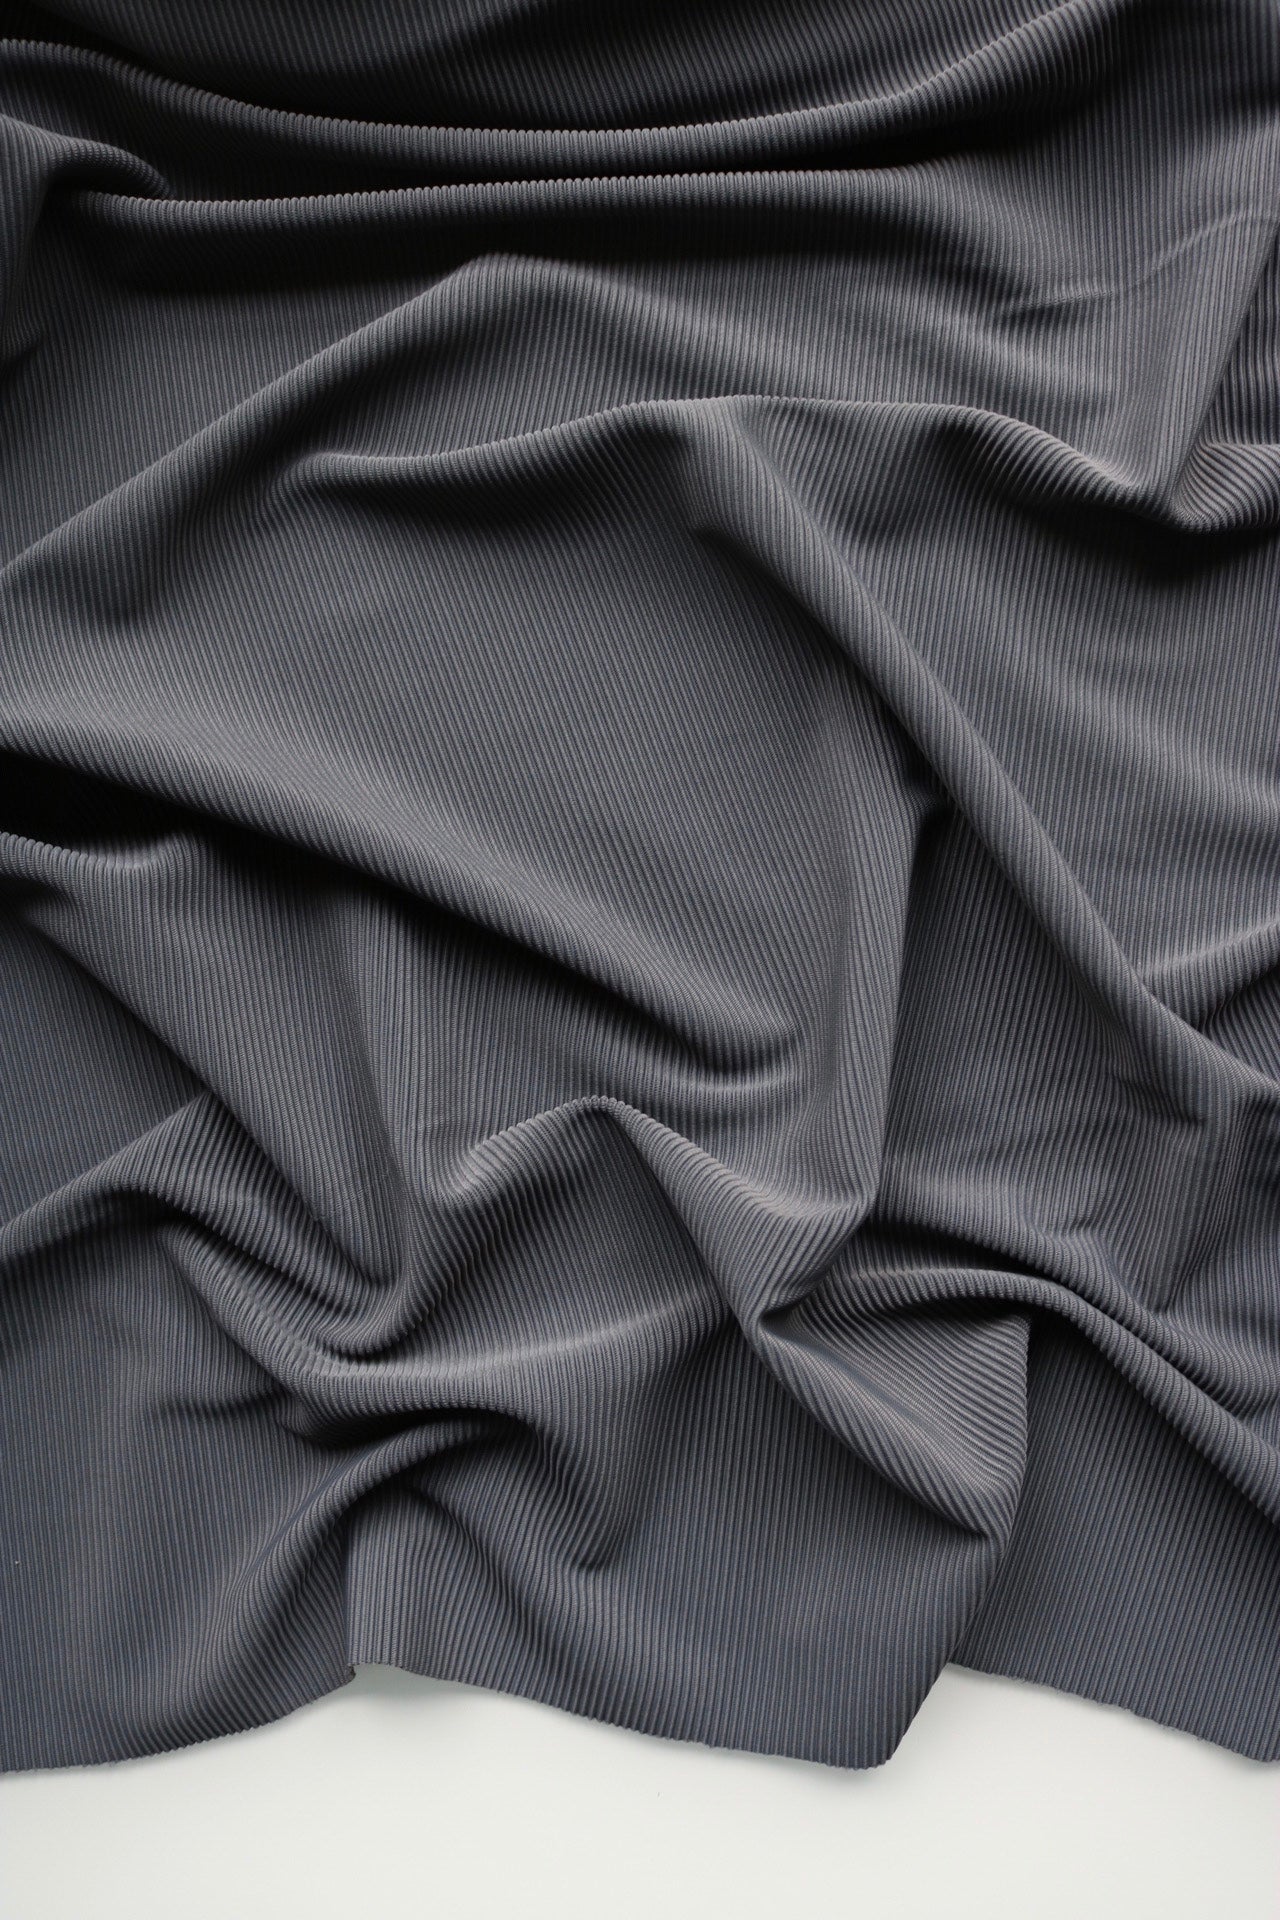 Lycra Grey Fabric Supplier - Cotton Lycra Poplin Manufacturer